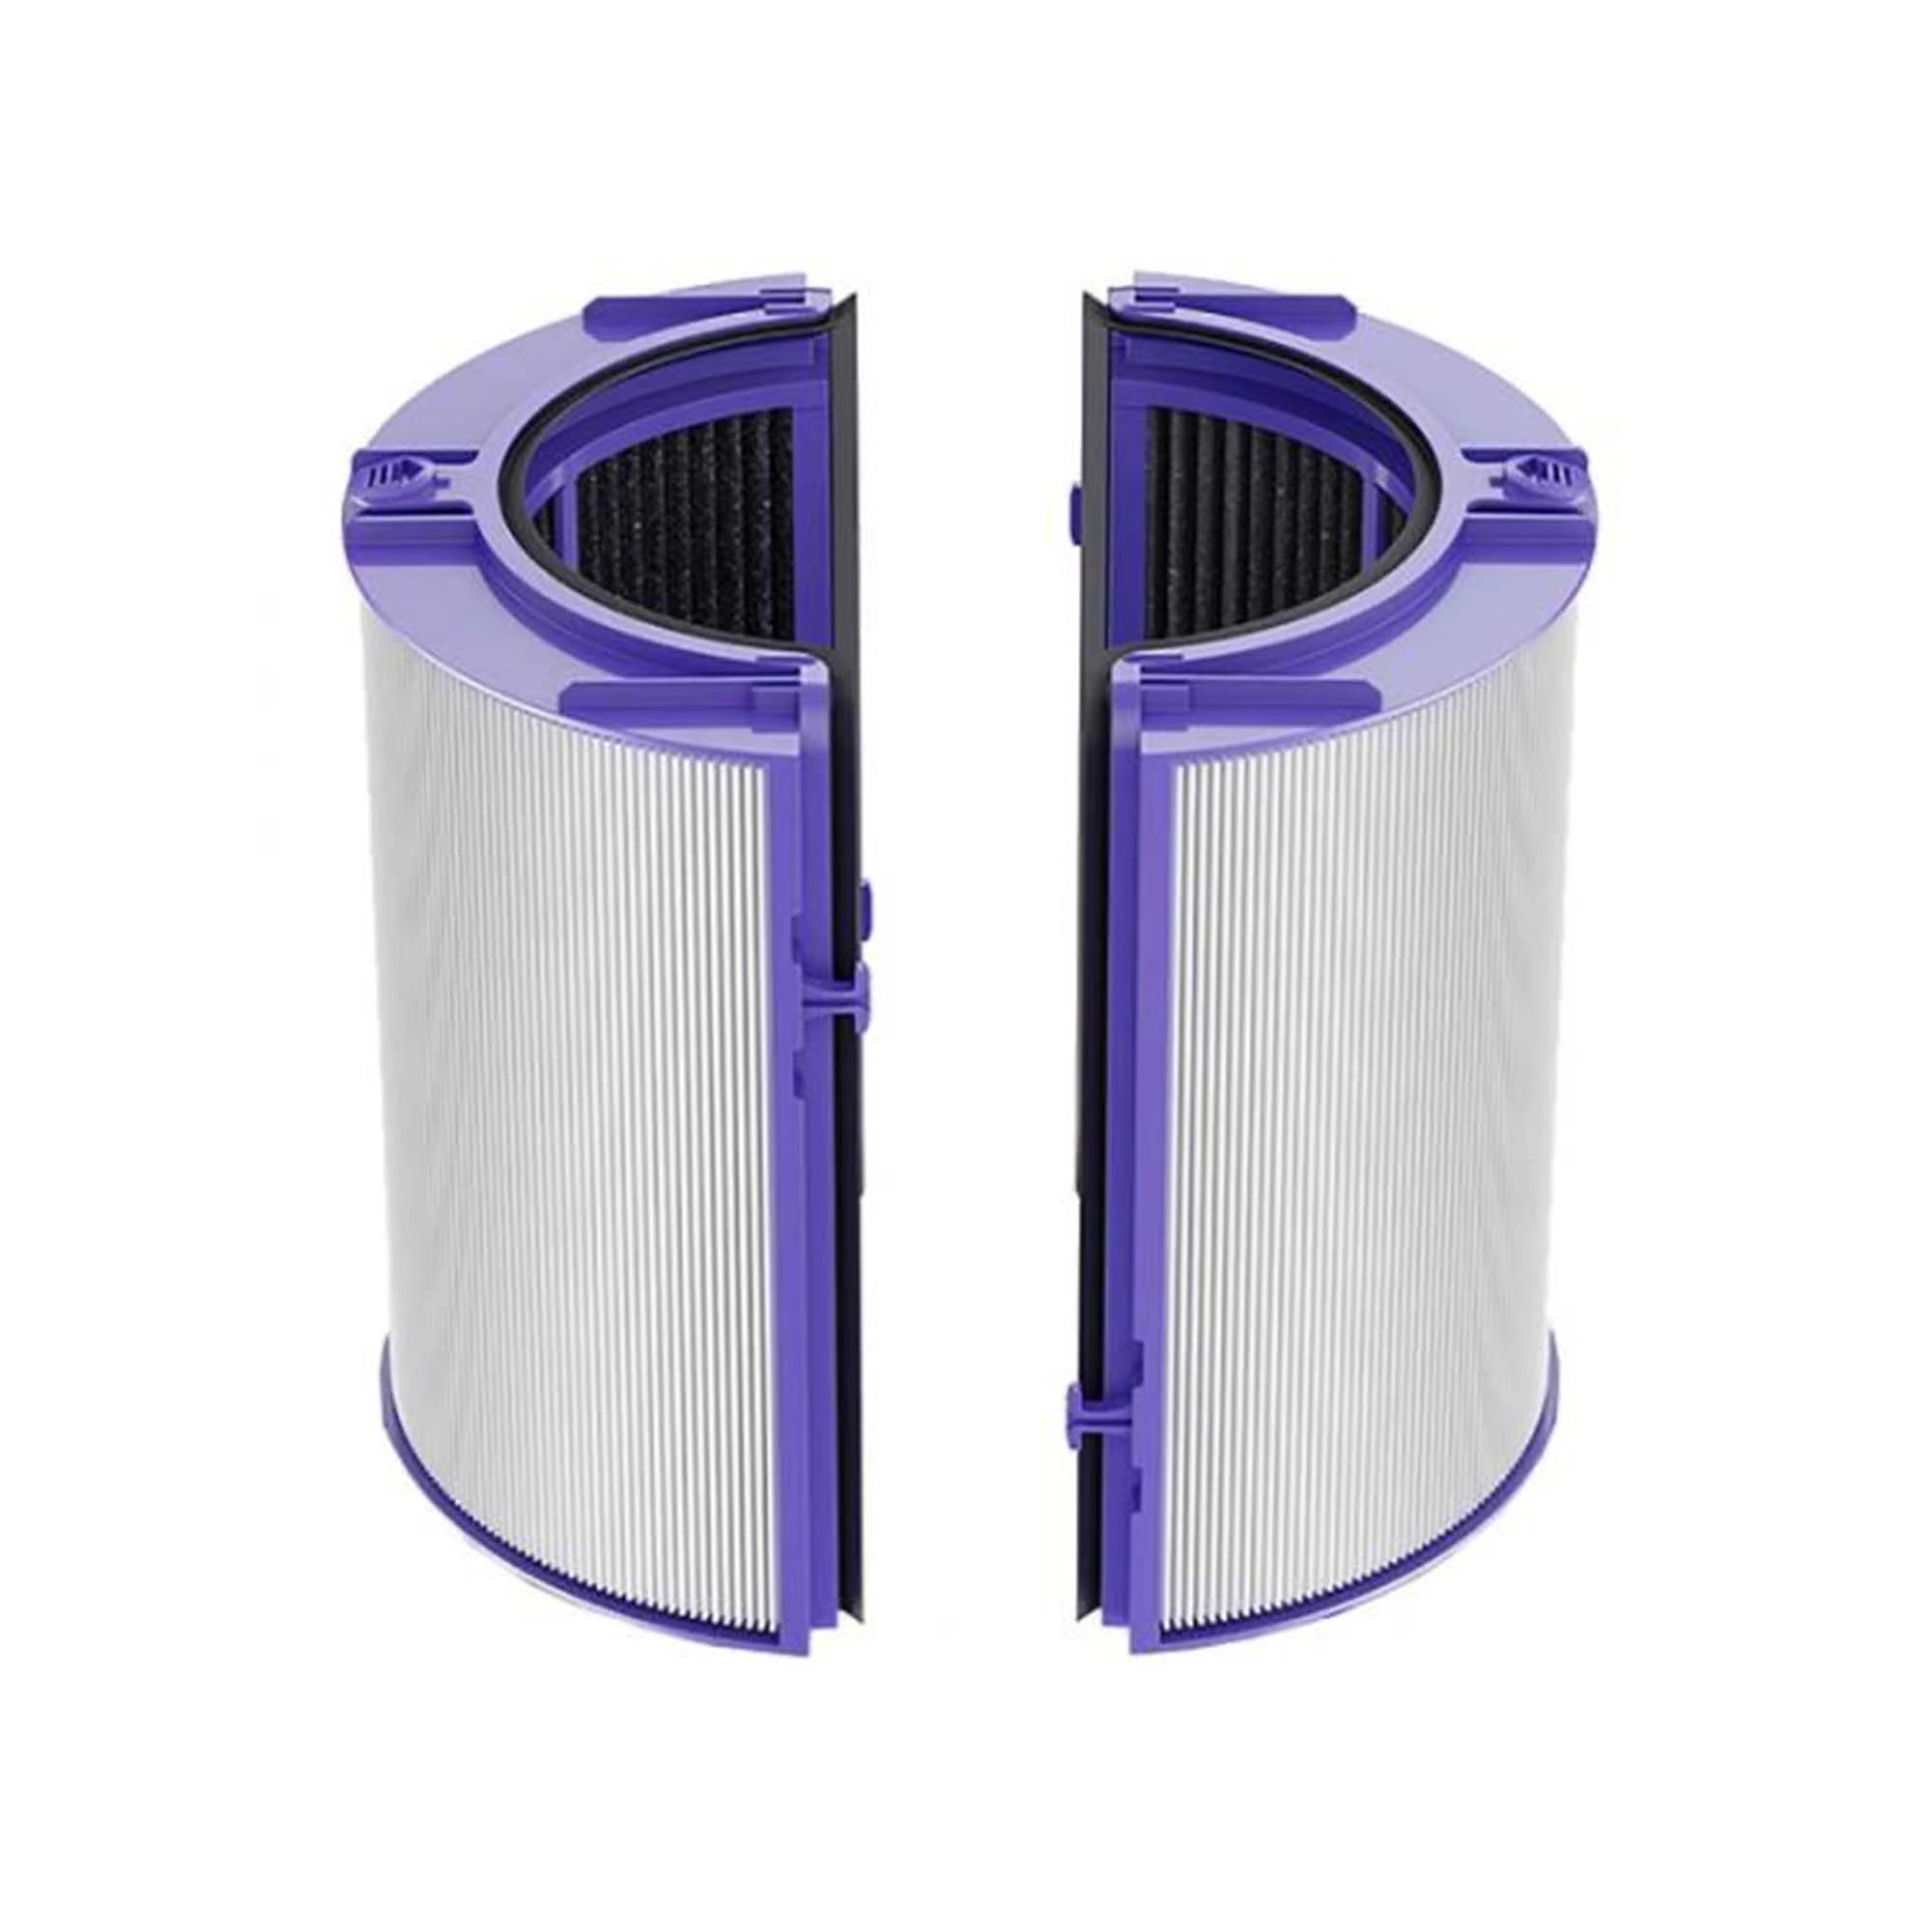 Фильтр для увлажнителей - очистителей воздуха Dyson РН01/02/04, HP06/07/08, TP06/07/08/09